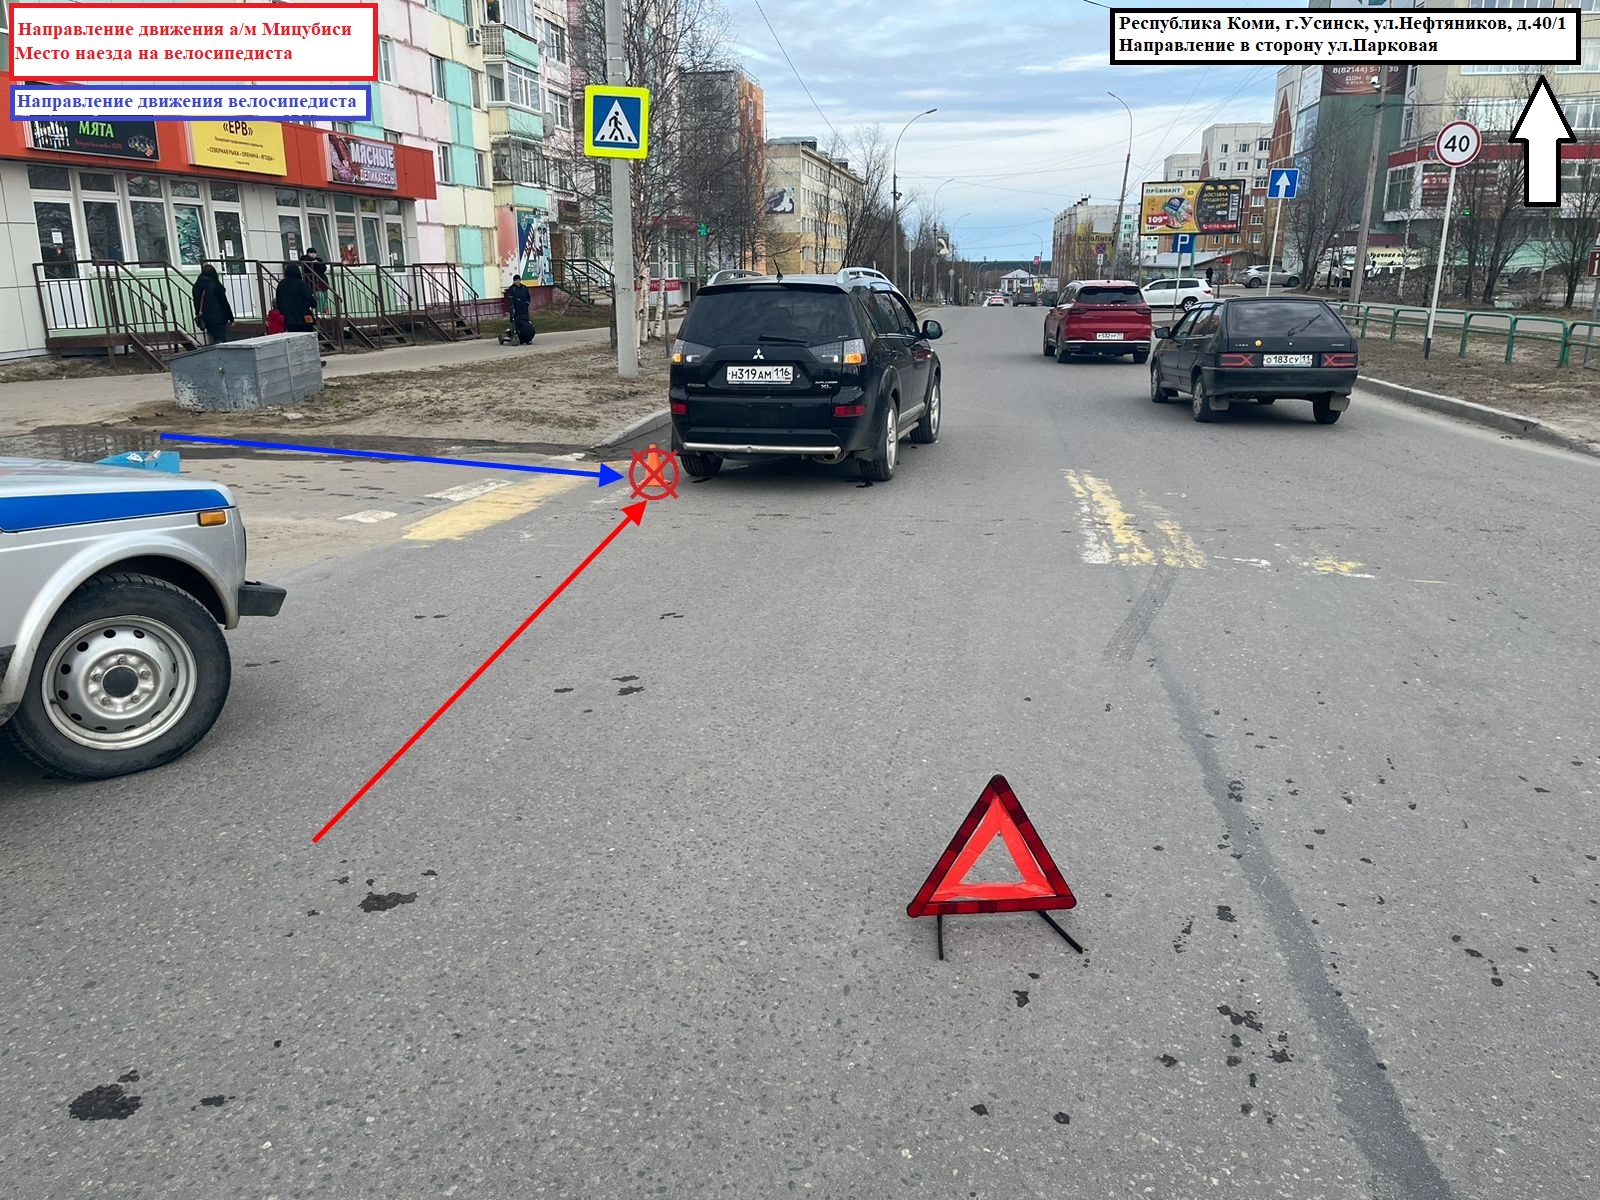 В Усинске 12-летний велосипедист попал под колеса ведорожника